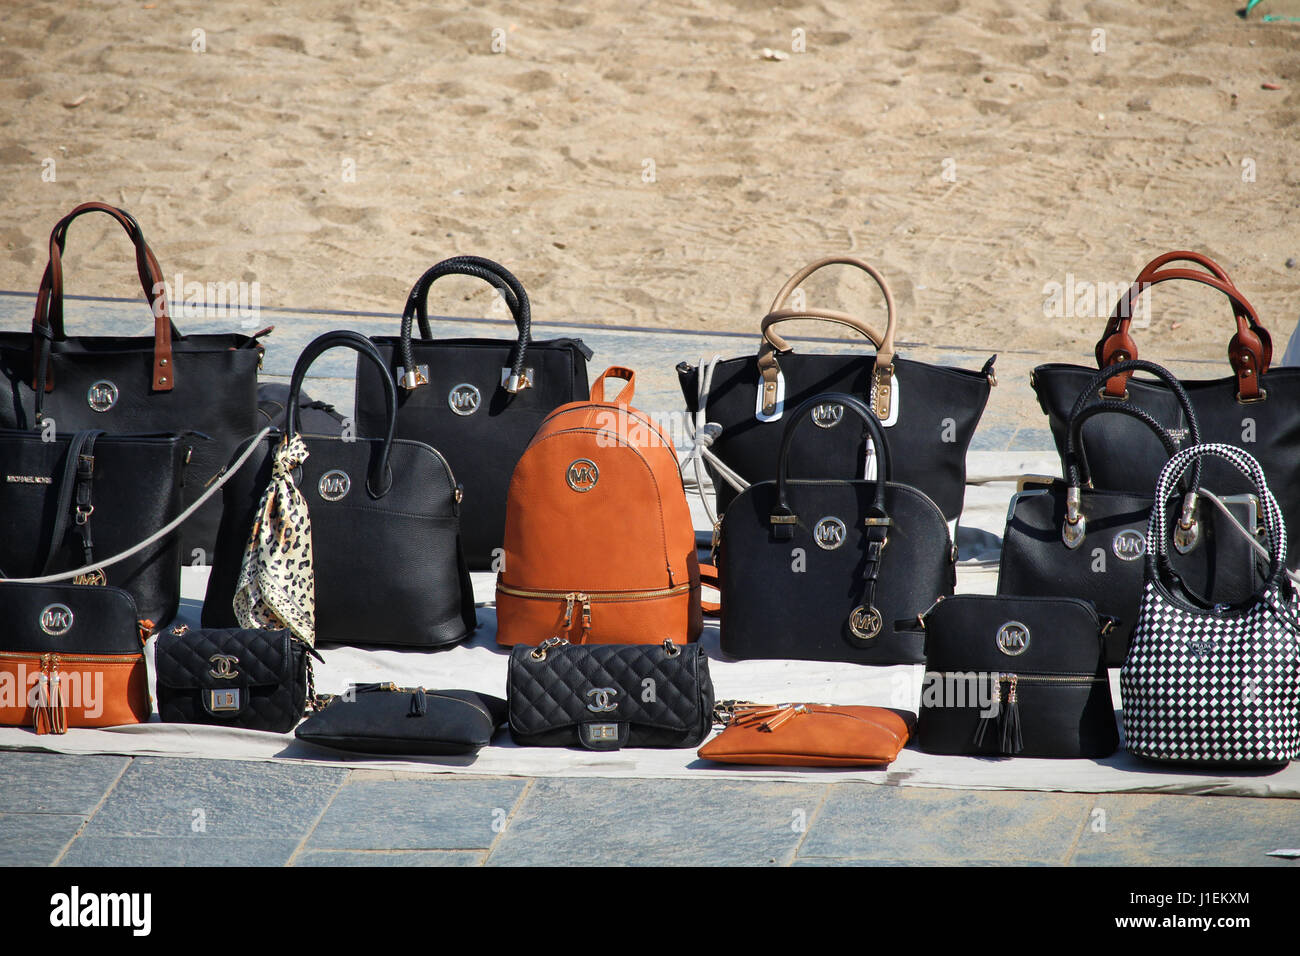 Barcelone/Espagne - 15 avril 2017 : faux sacs en cuir de marque comme Michael  Kors et Chanel vendus sur la plage de la Barceloneta Photo Stock - Alamy